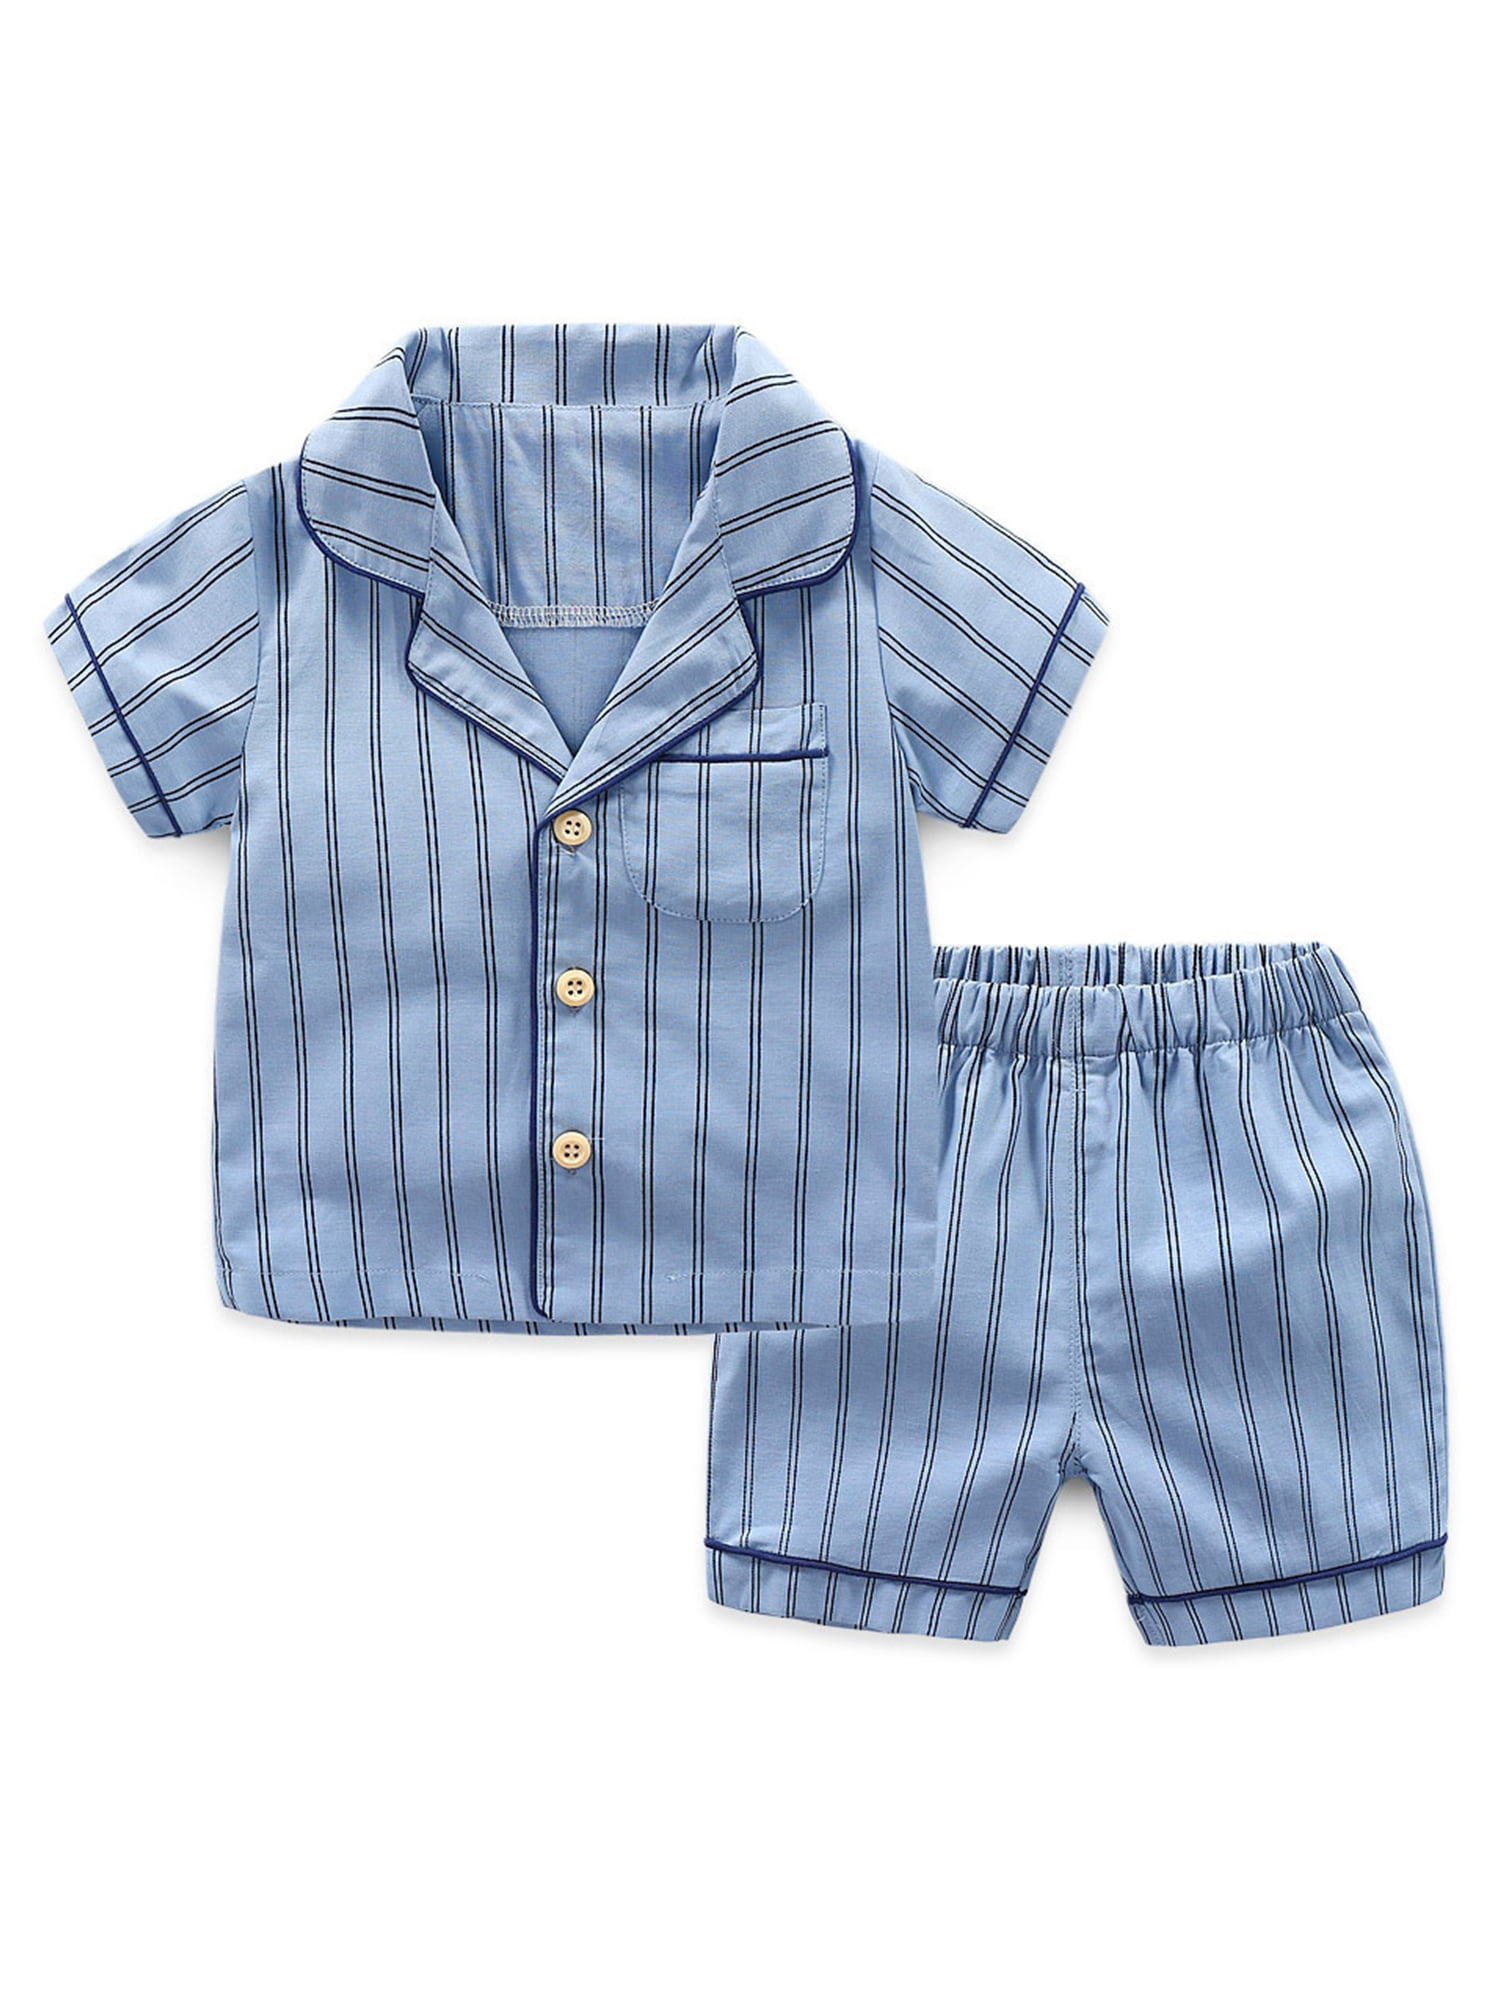 Children's wear boys Racing pattern pajamas set 2T-7T cotton sleepwear nightwear 